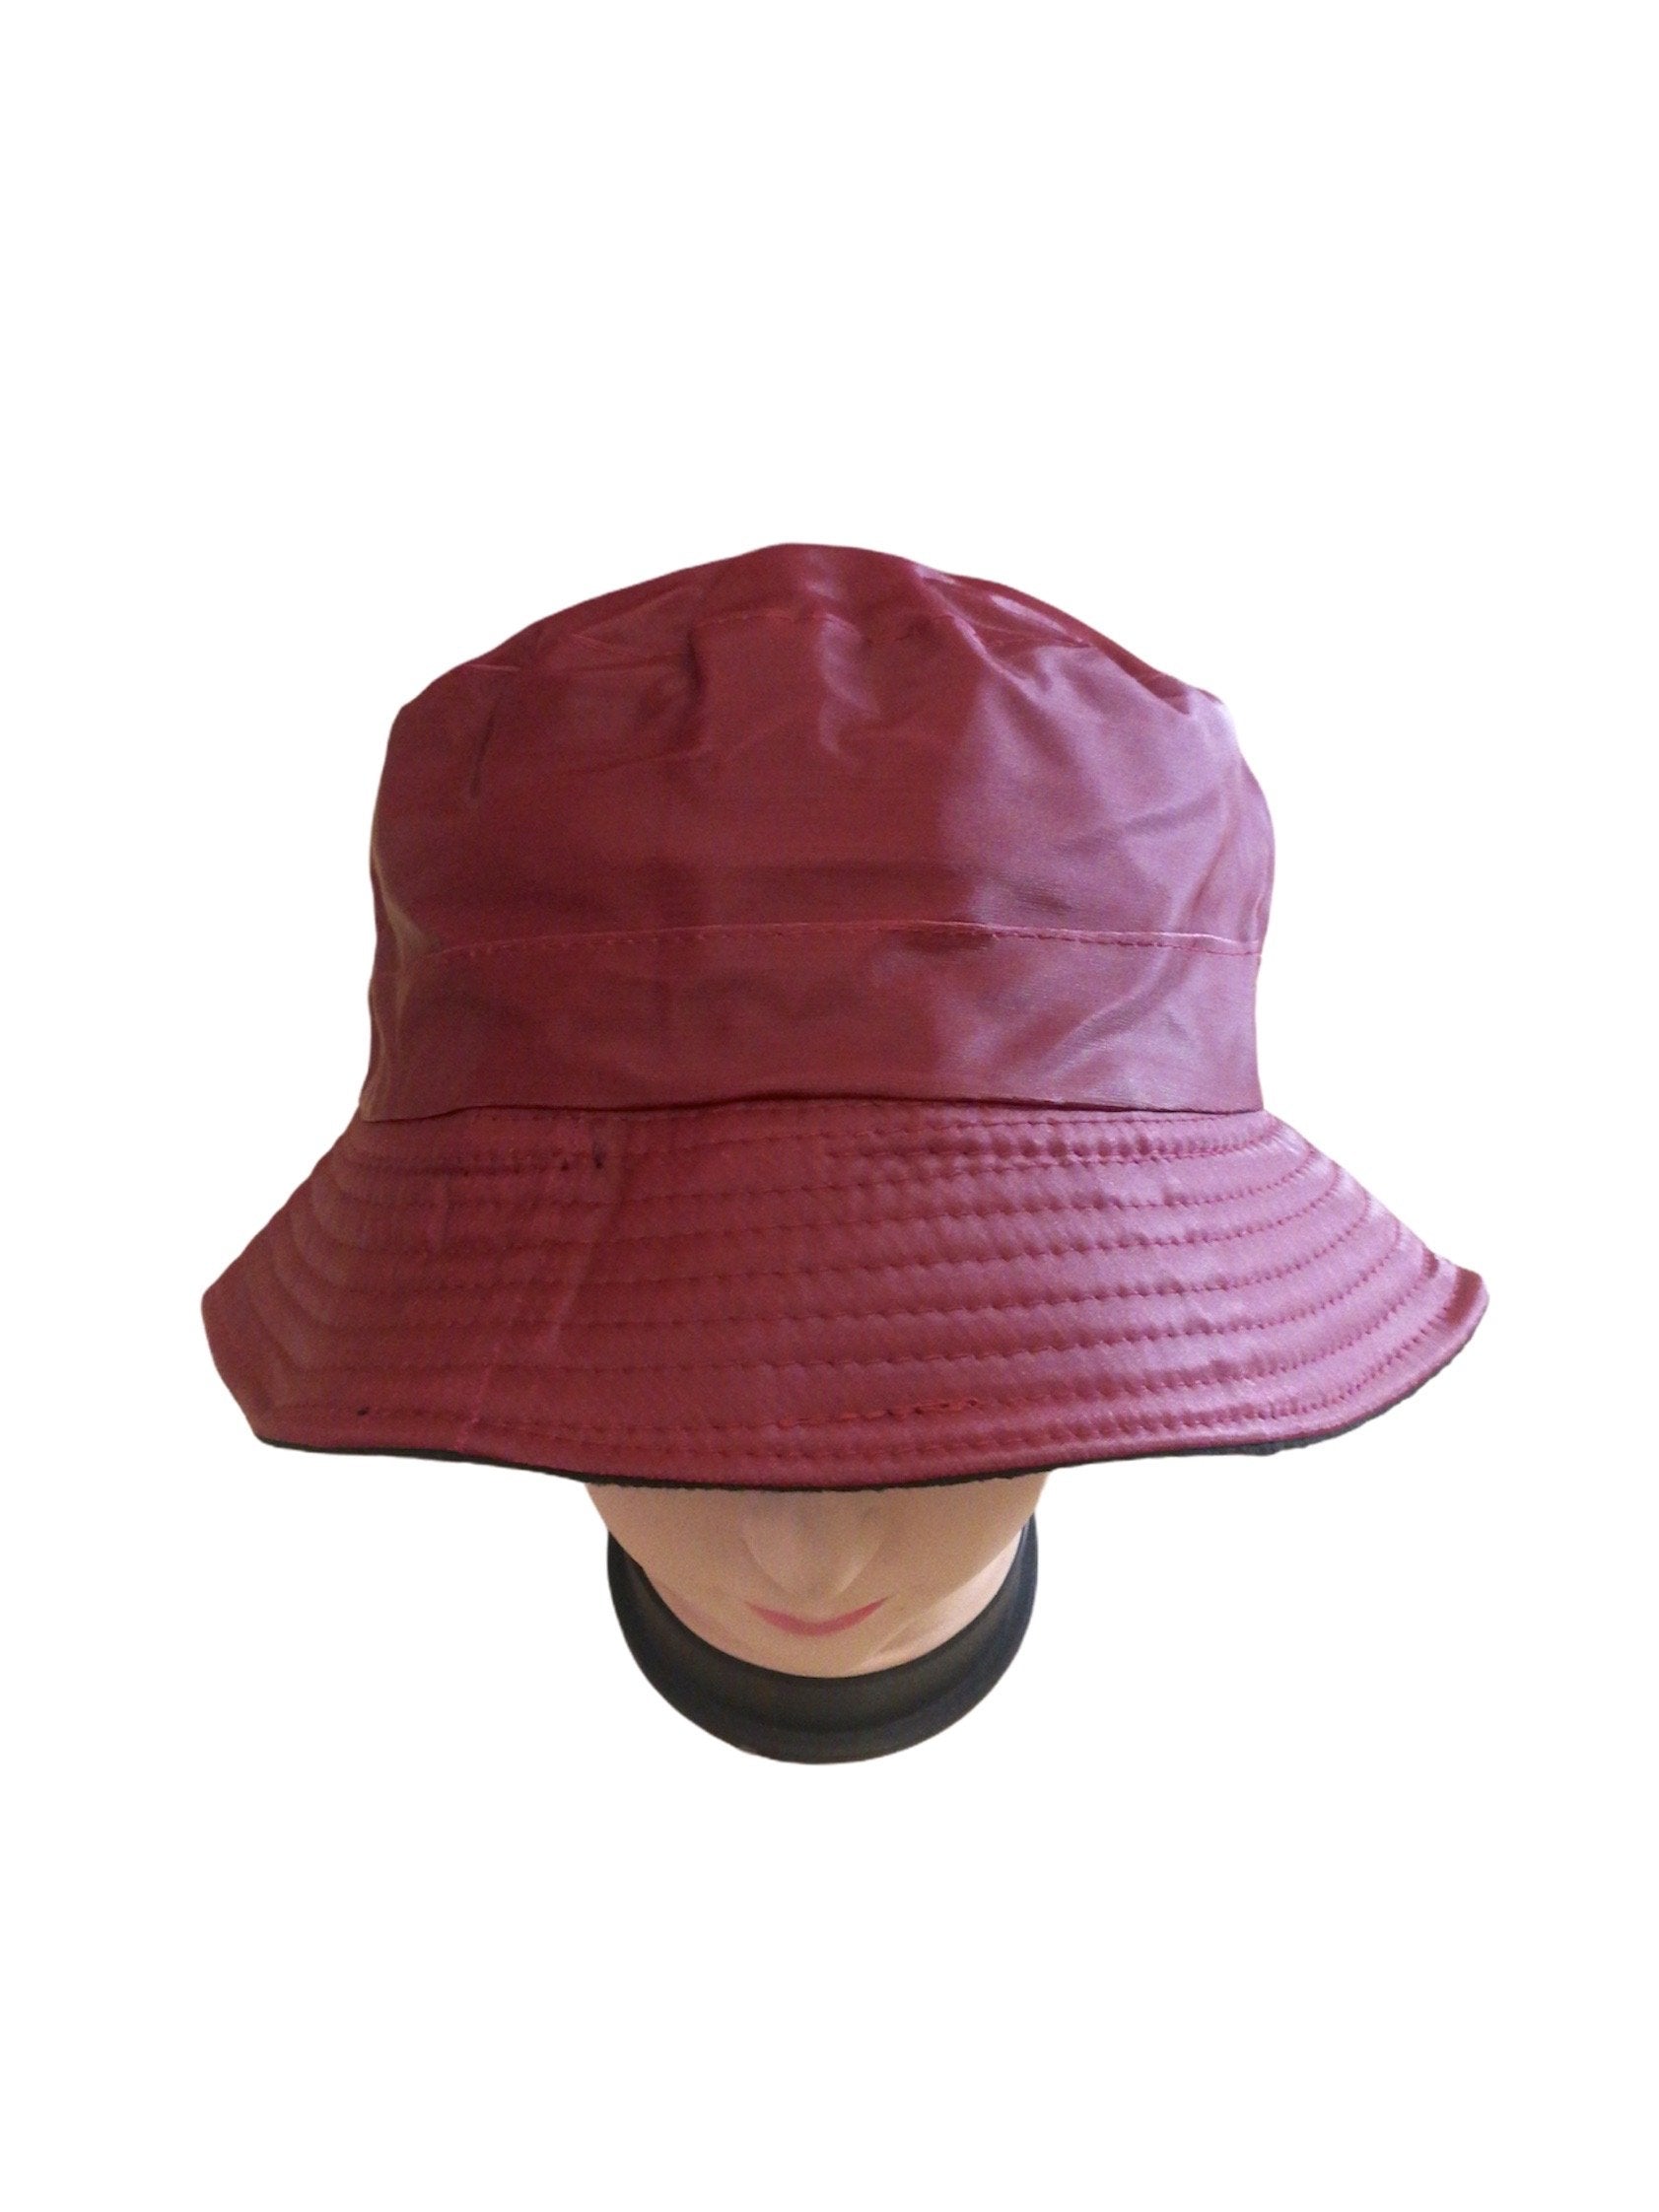 Chapeaux bob imperméable        (x12) 2,00€/unité | Grossiste-pro